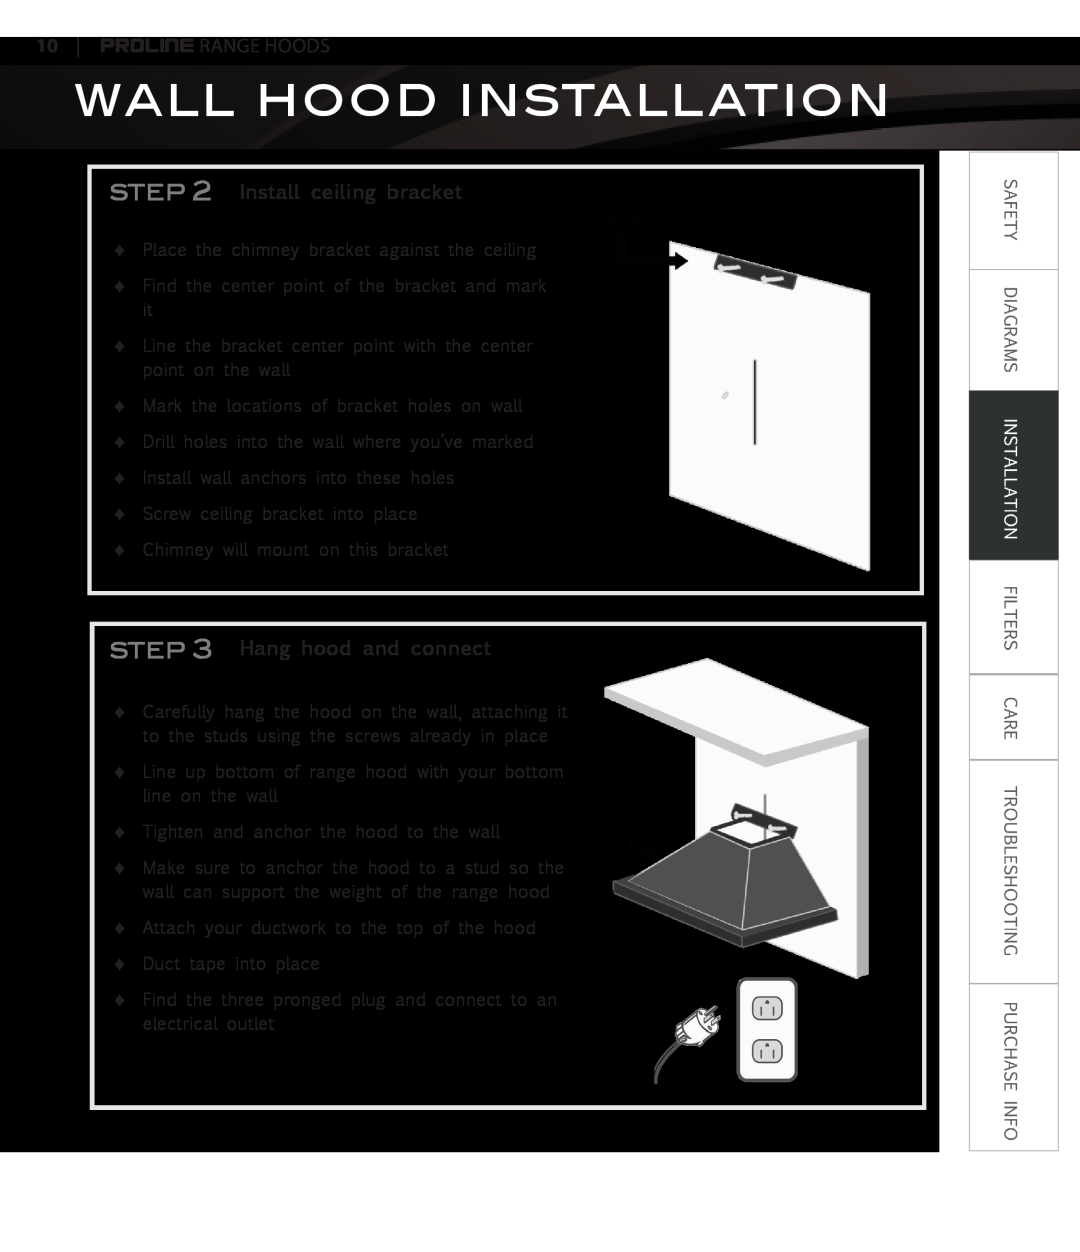 Proline PLJW125, PLJW129 Install ceiling bracket, Hang hood and connect, Wall Hood Installation, Proline Range Hoods 